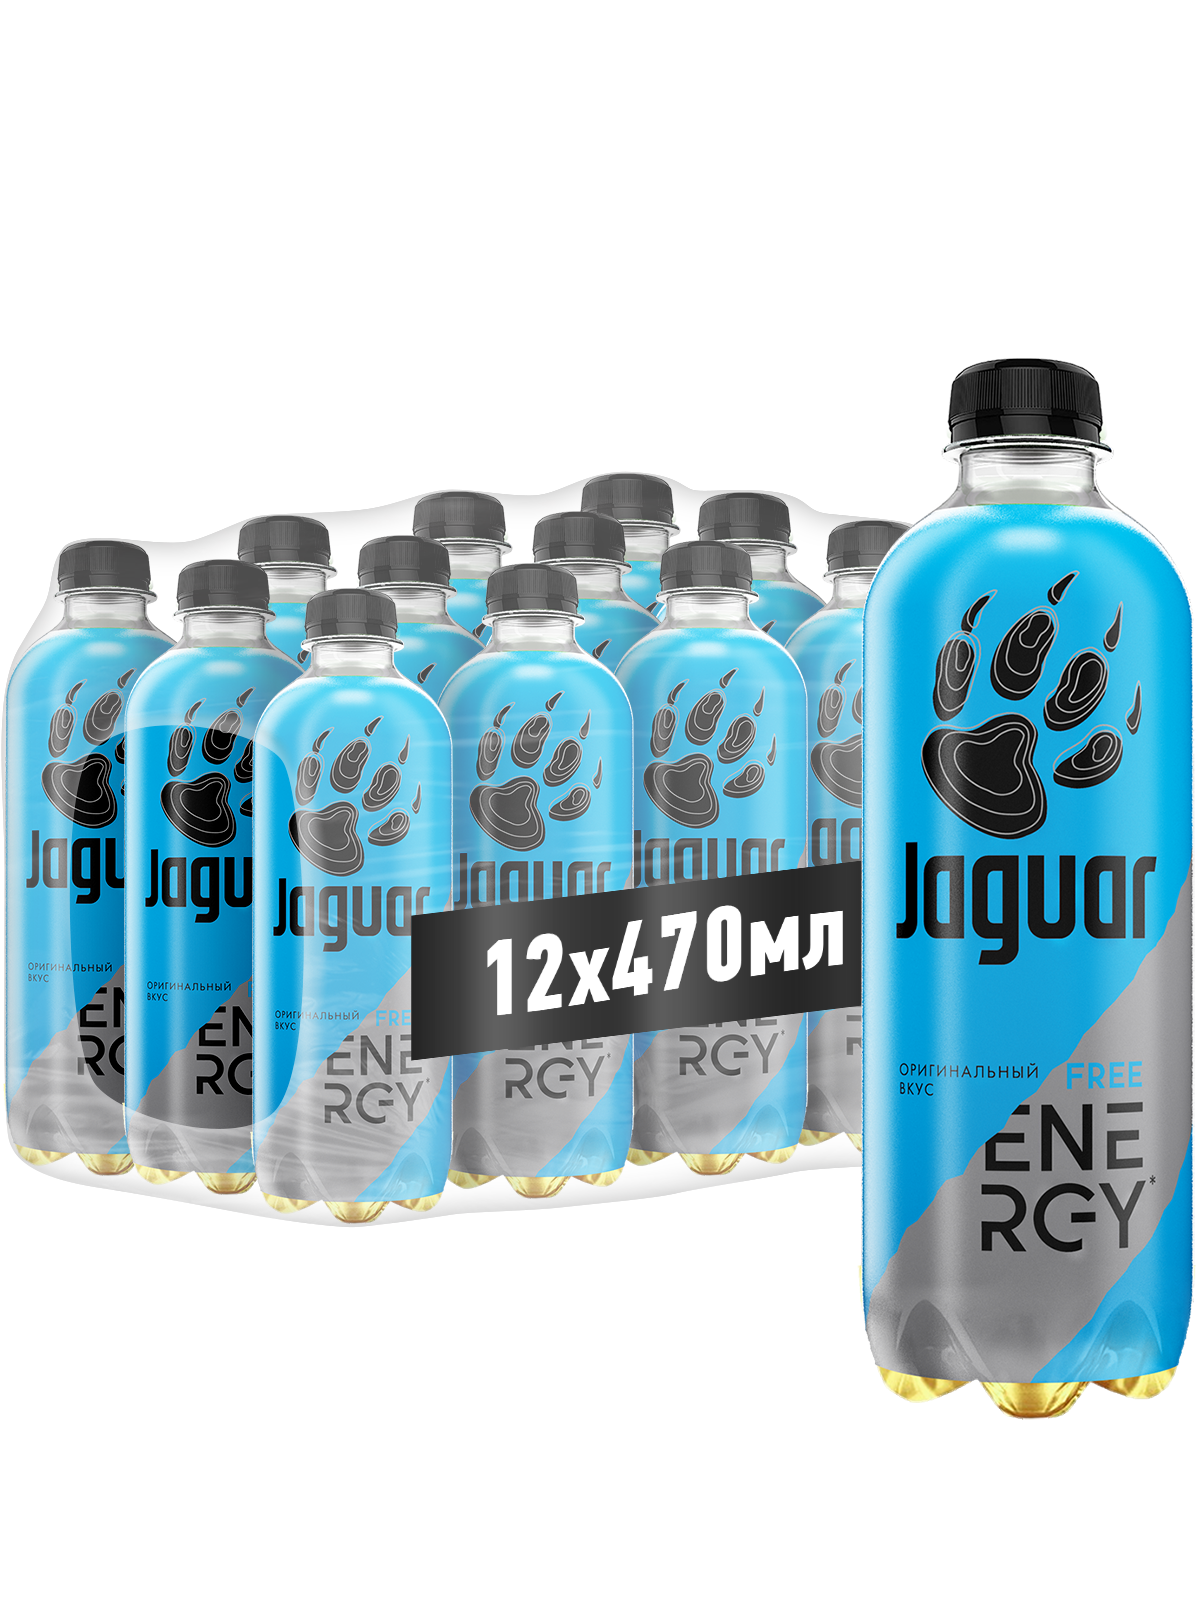 Энергетический напиток Jaguar Free energy, 0,47 л х 12 шт - купить в Москве, цены на Мегамаркет | 600015348313